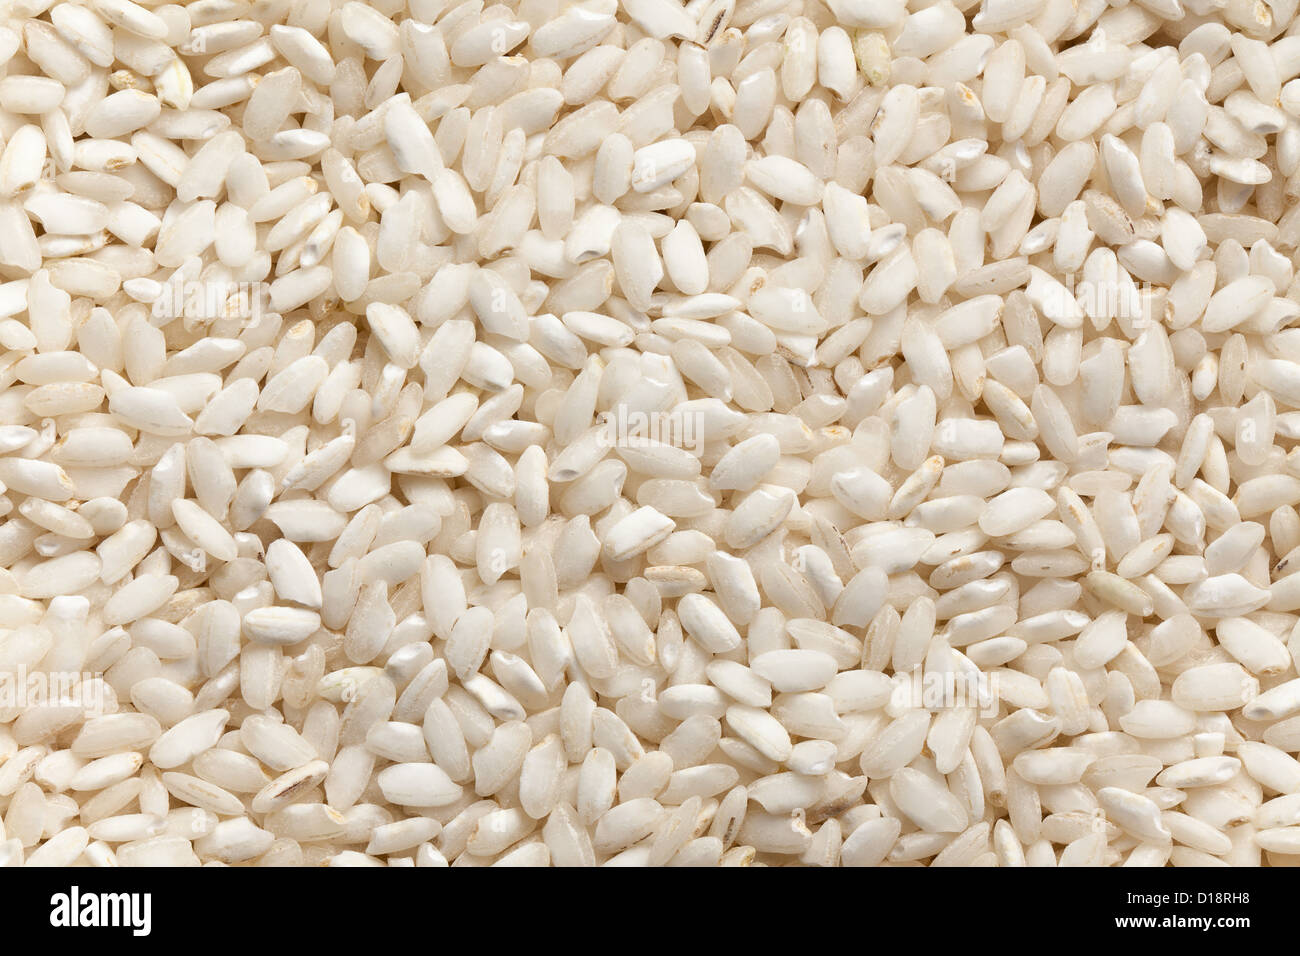 the uncooked arborio rice background Stock Photo - Alamy